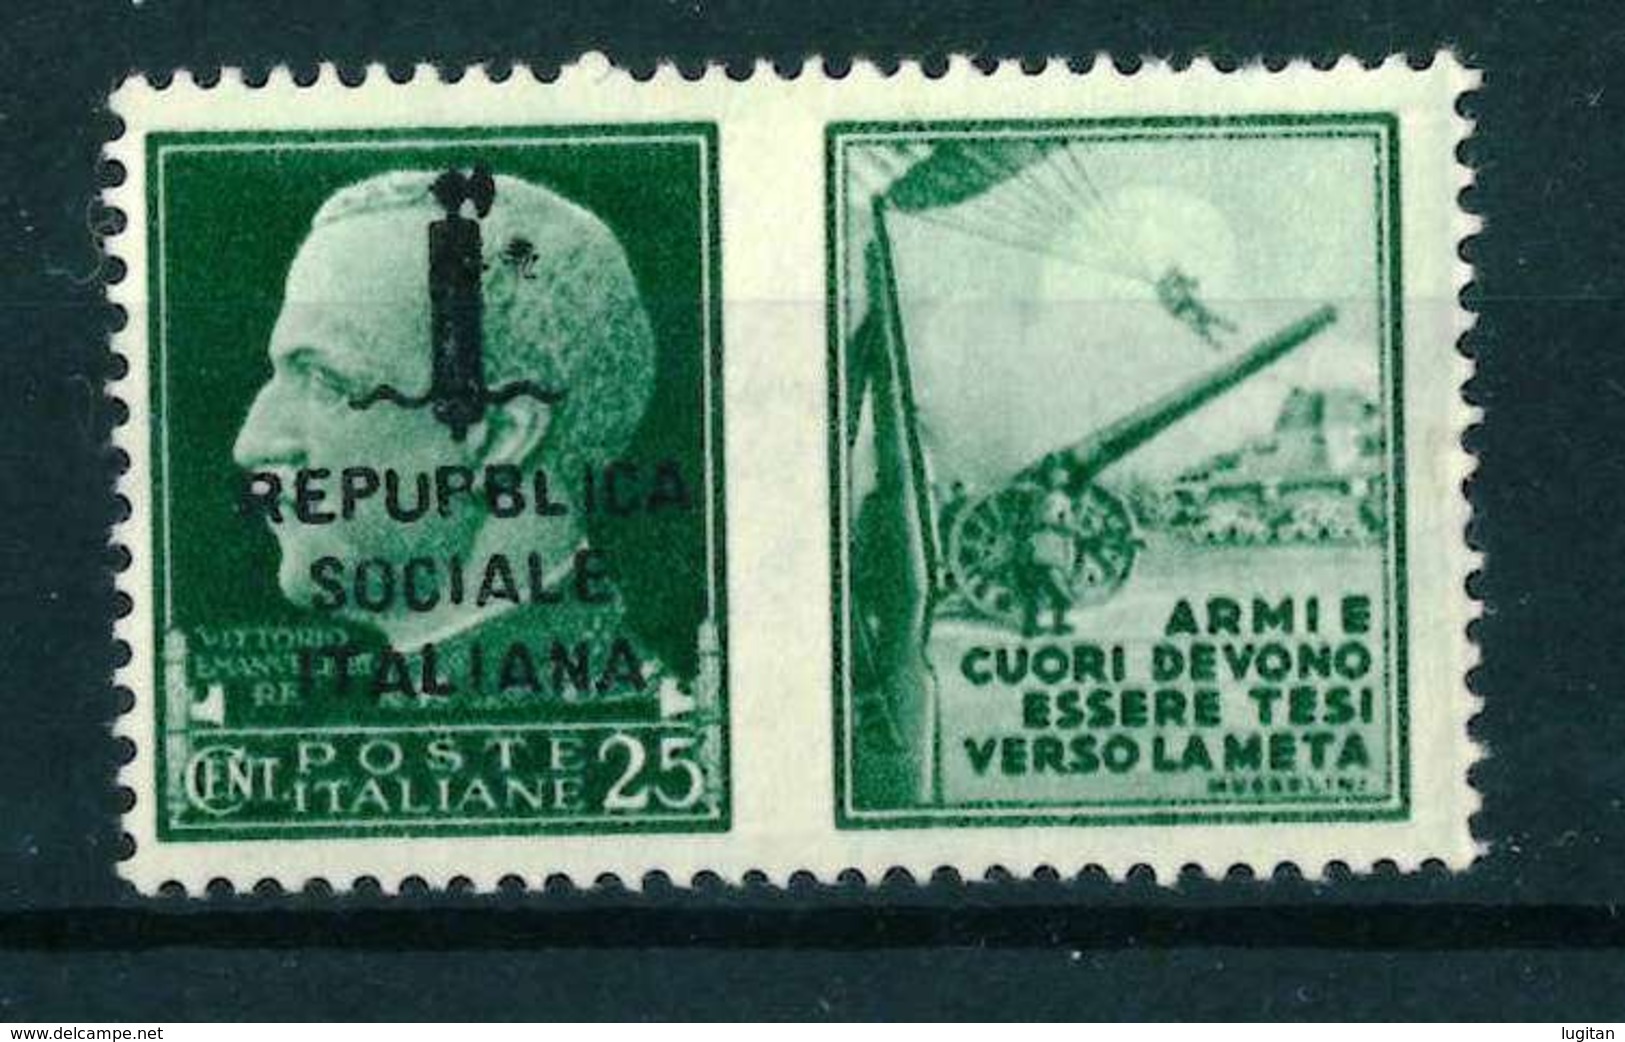 VARIETA' - REPUBPLICA ITALIANA SASS. 26 H - NUOVO MNH**  - PROPAGANDA DI GUERRA - Oorlogspropaganda